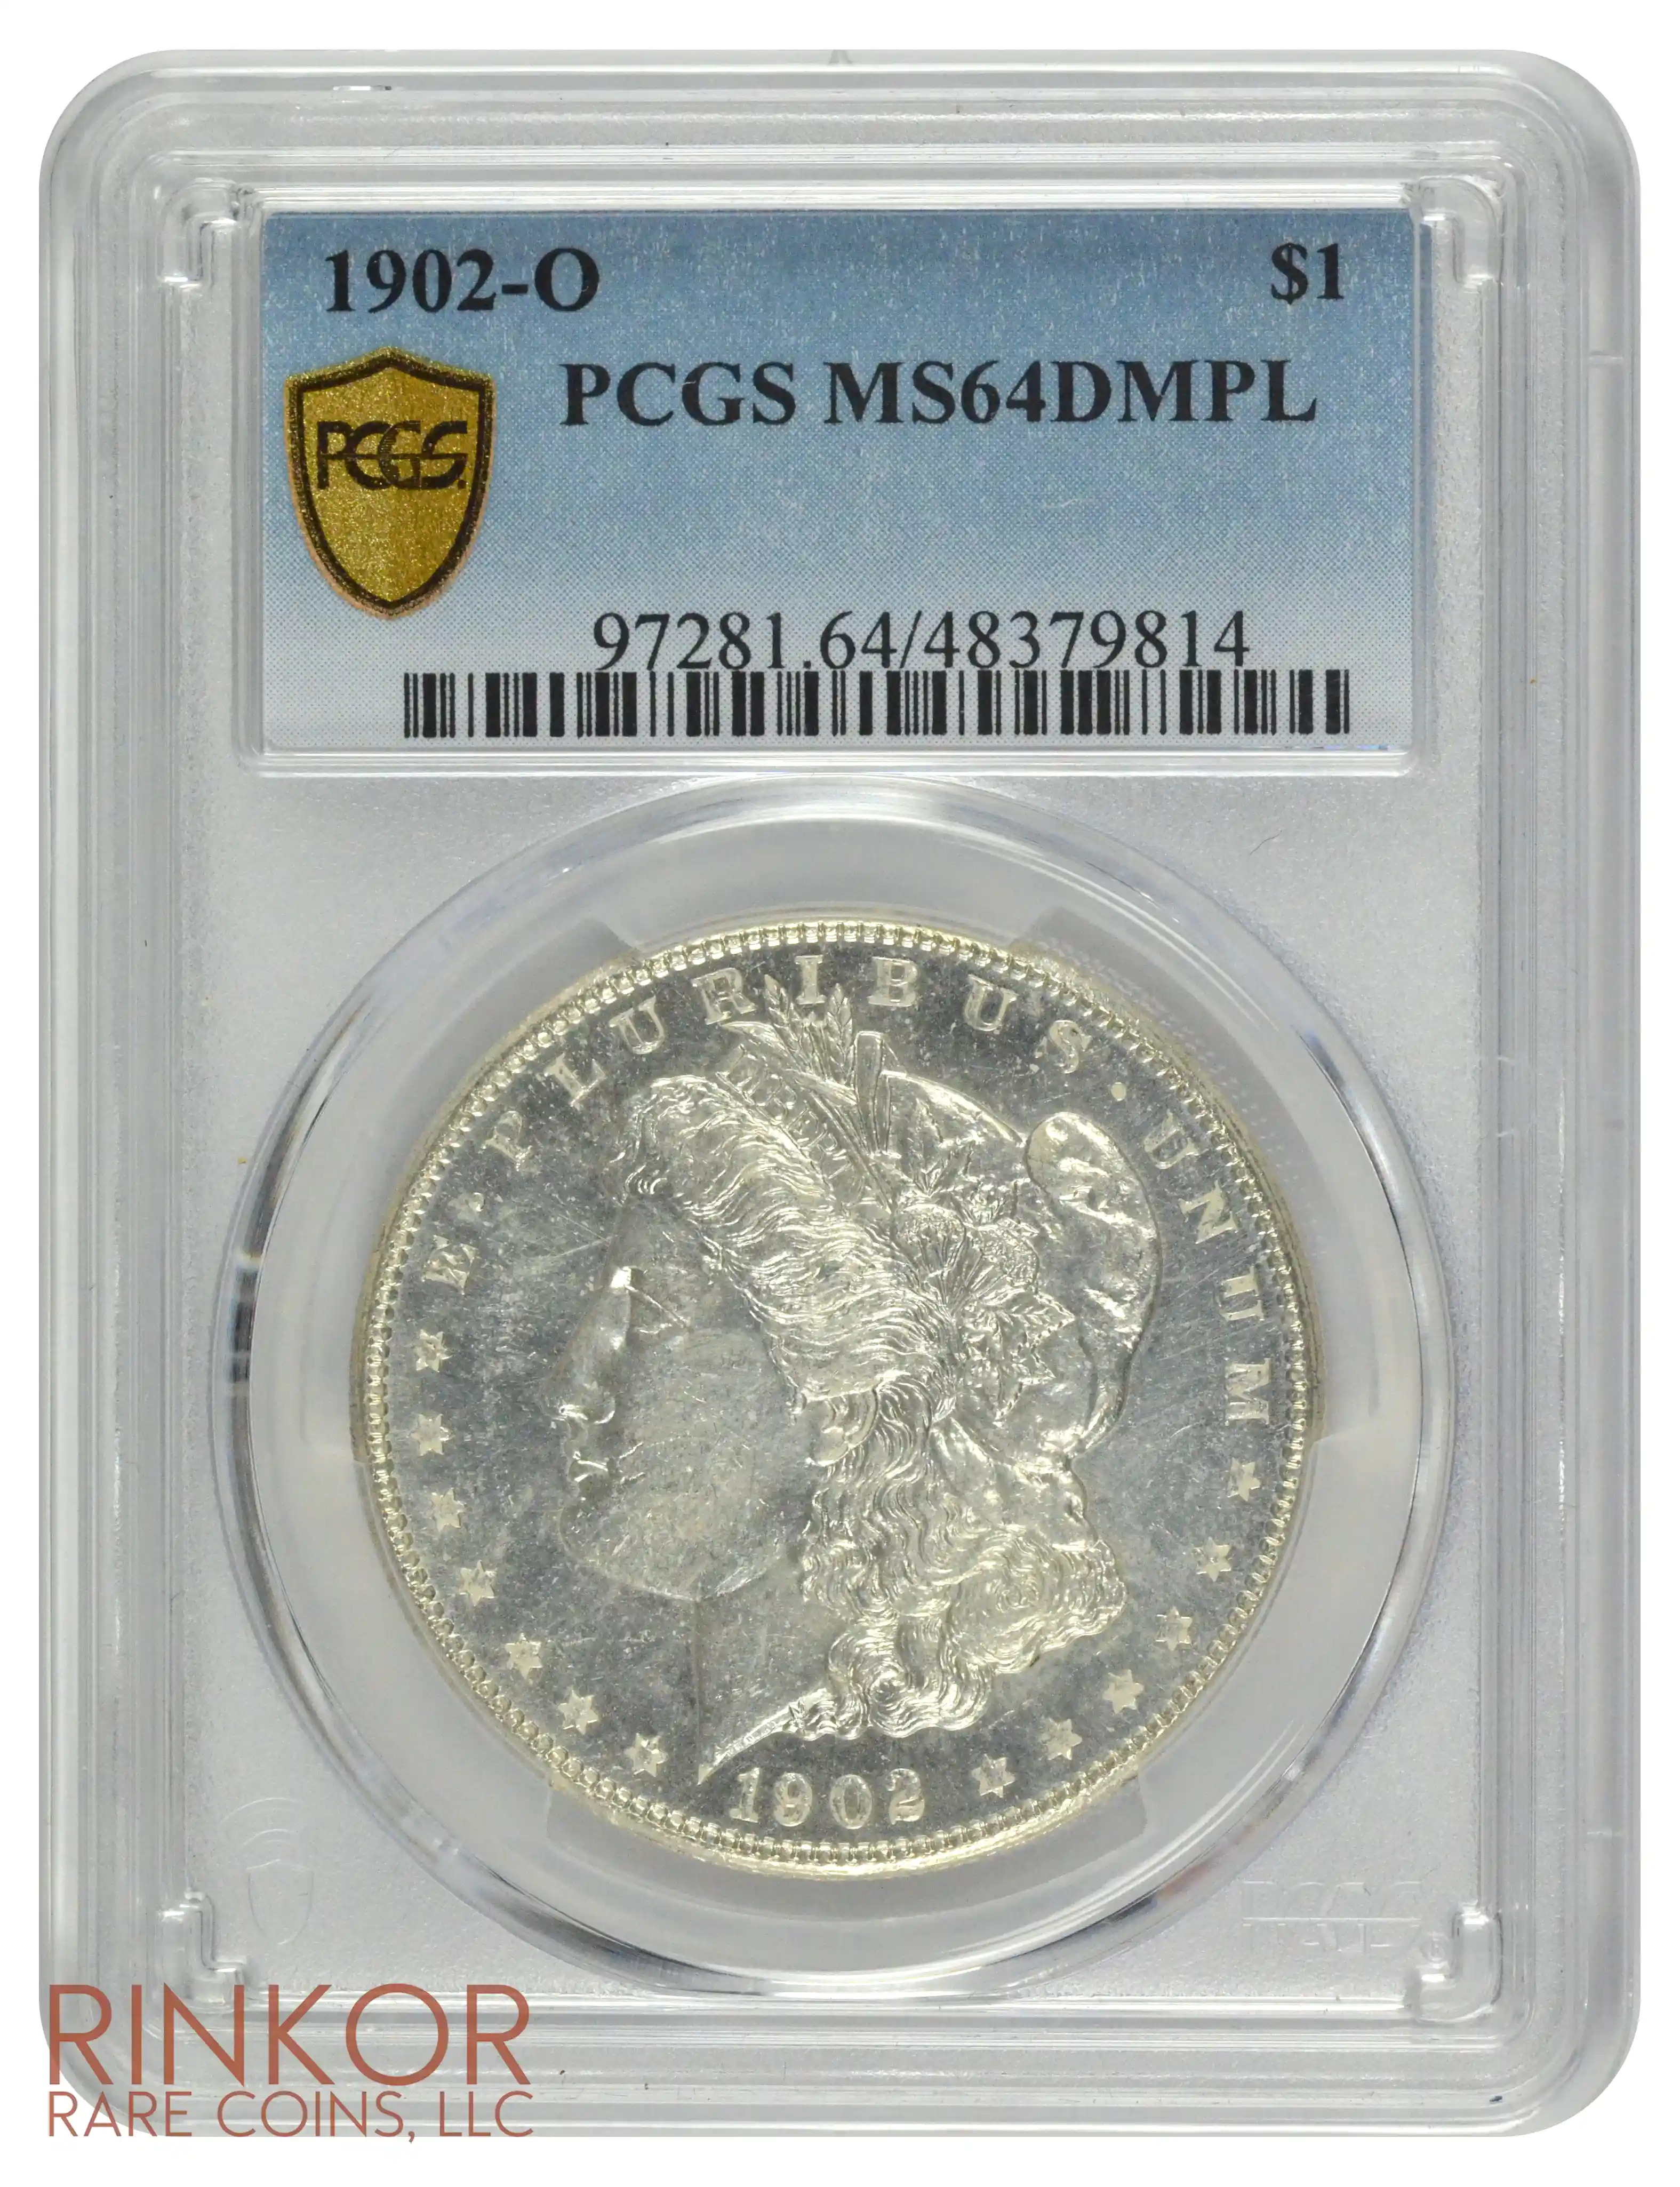 1902-O $1 PCGS MS 64 DMPL 